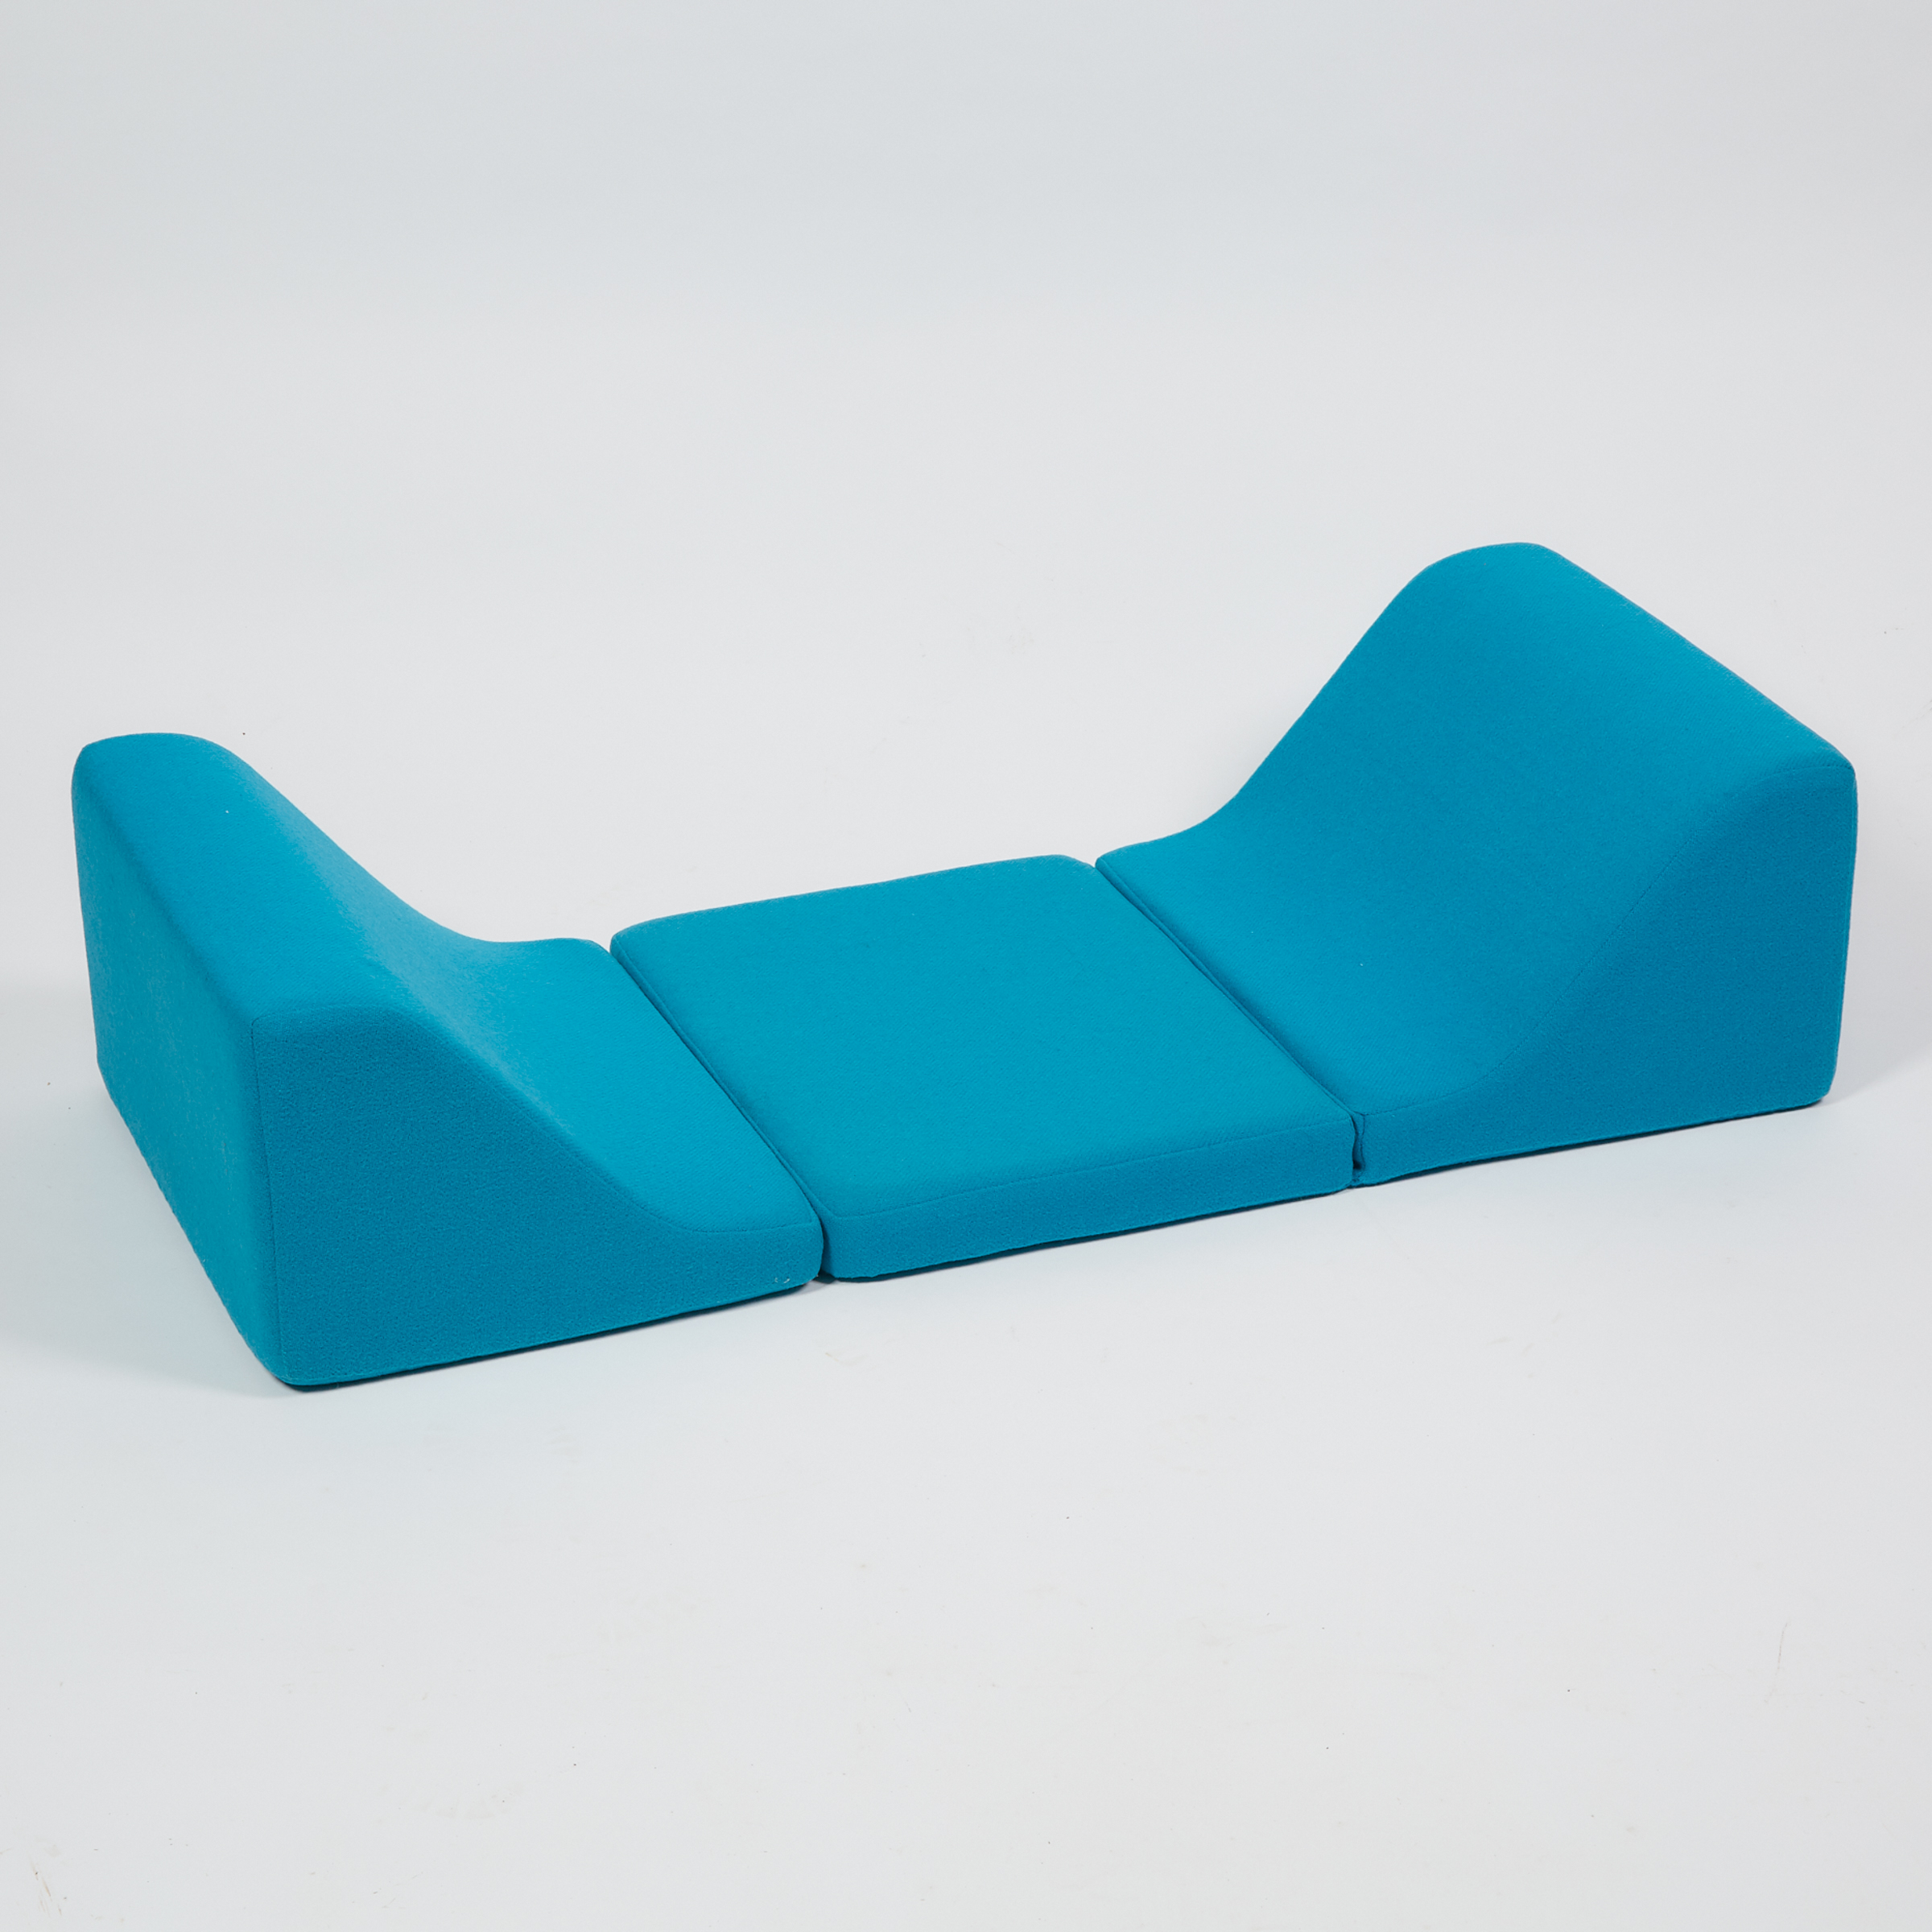 Johannes Larsen (b.1912) 'Cubo' Adjustable Cushion Ottoman, c.1967